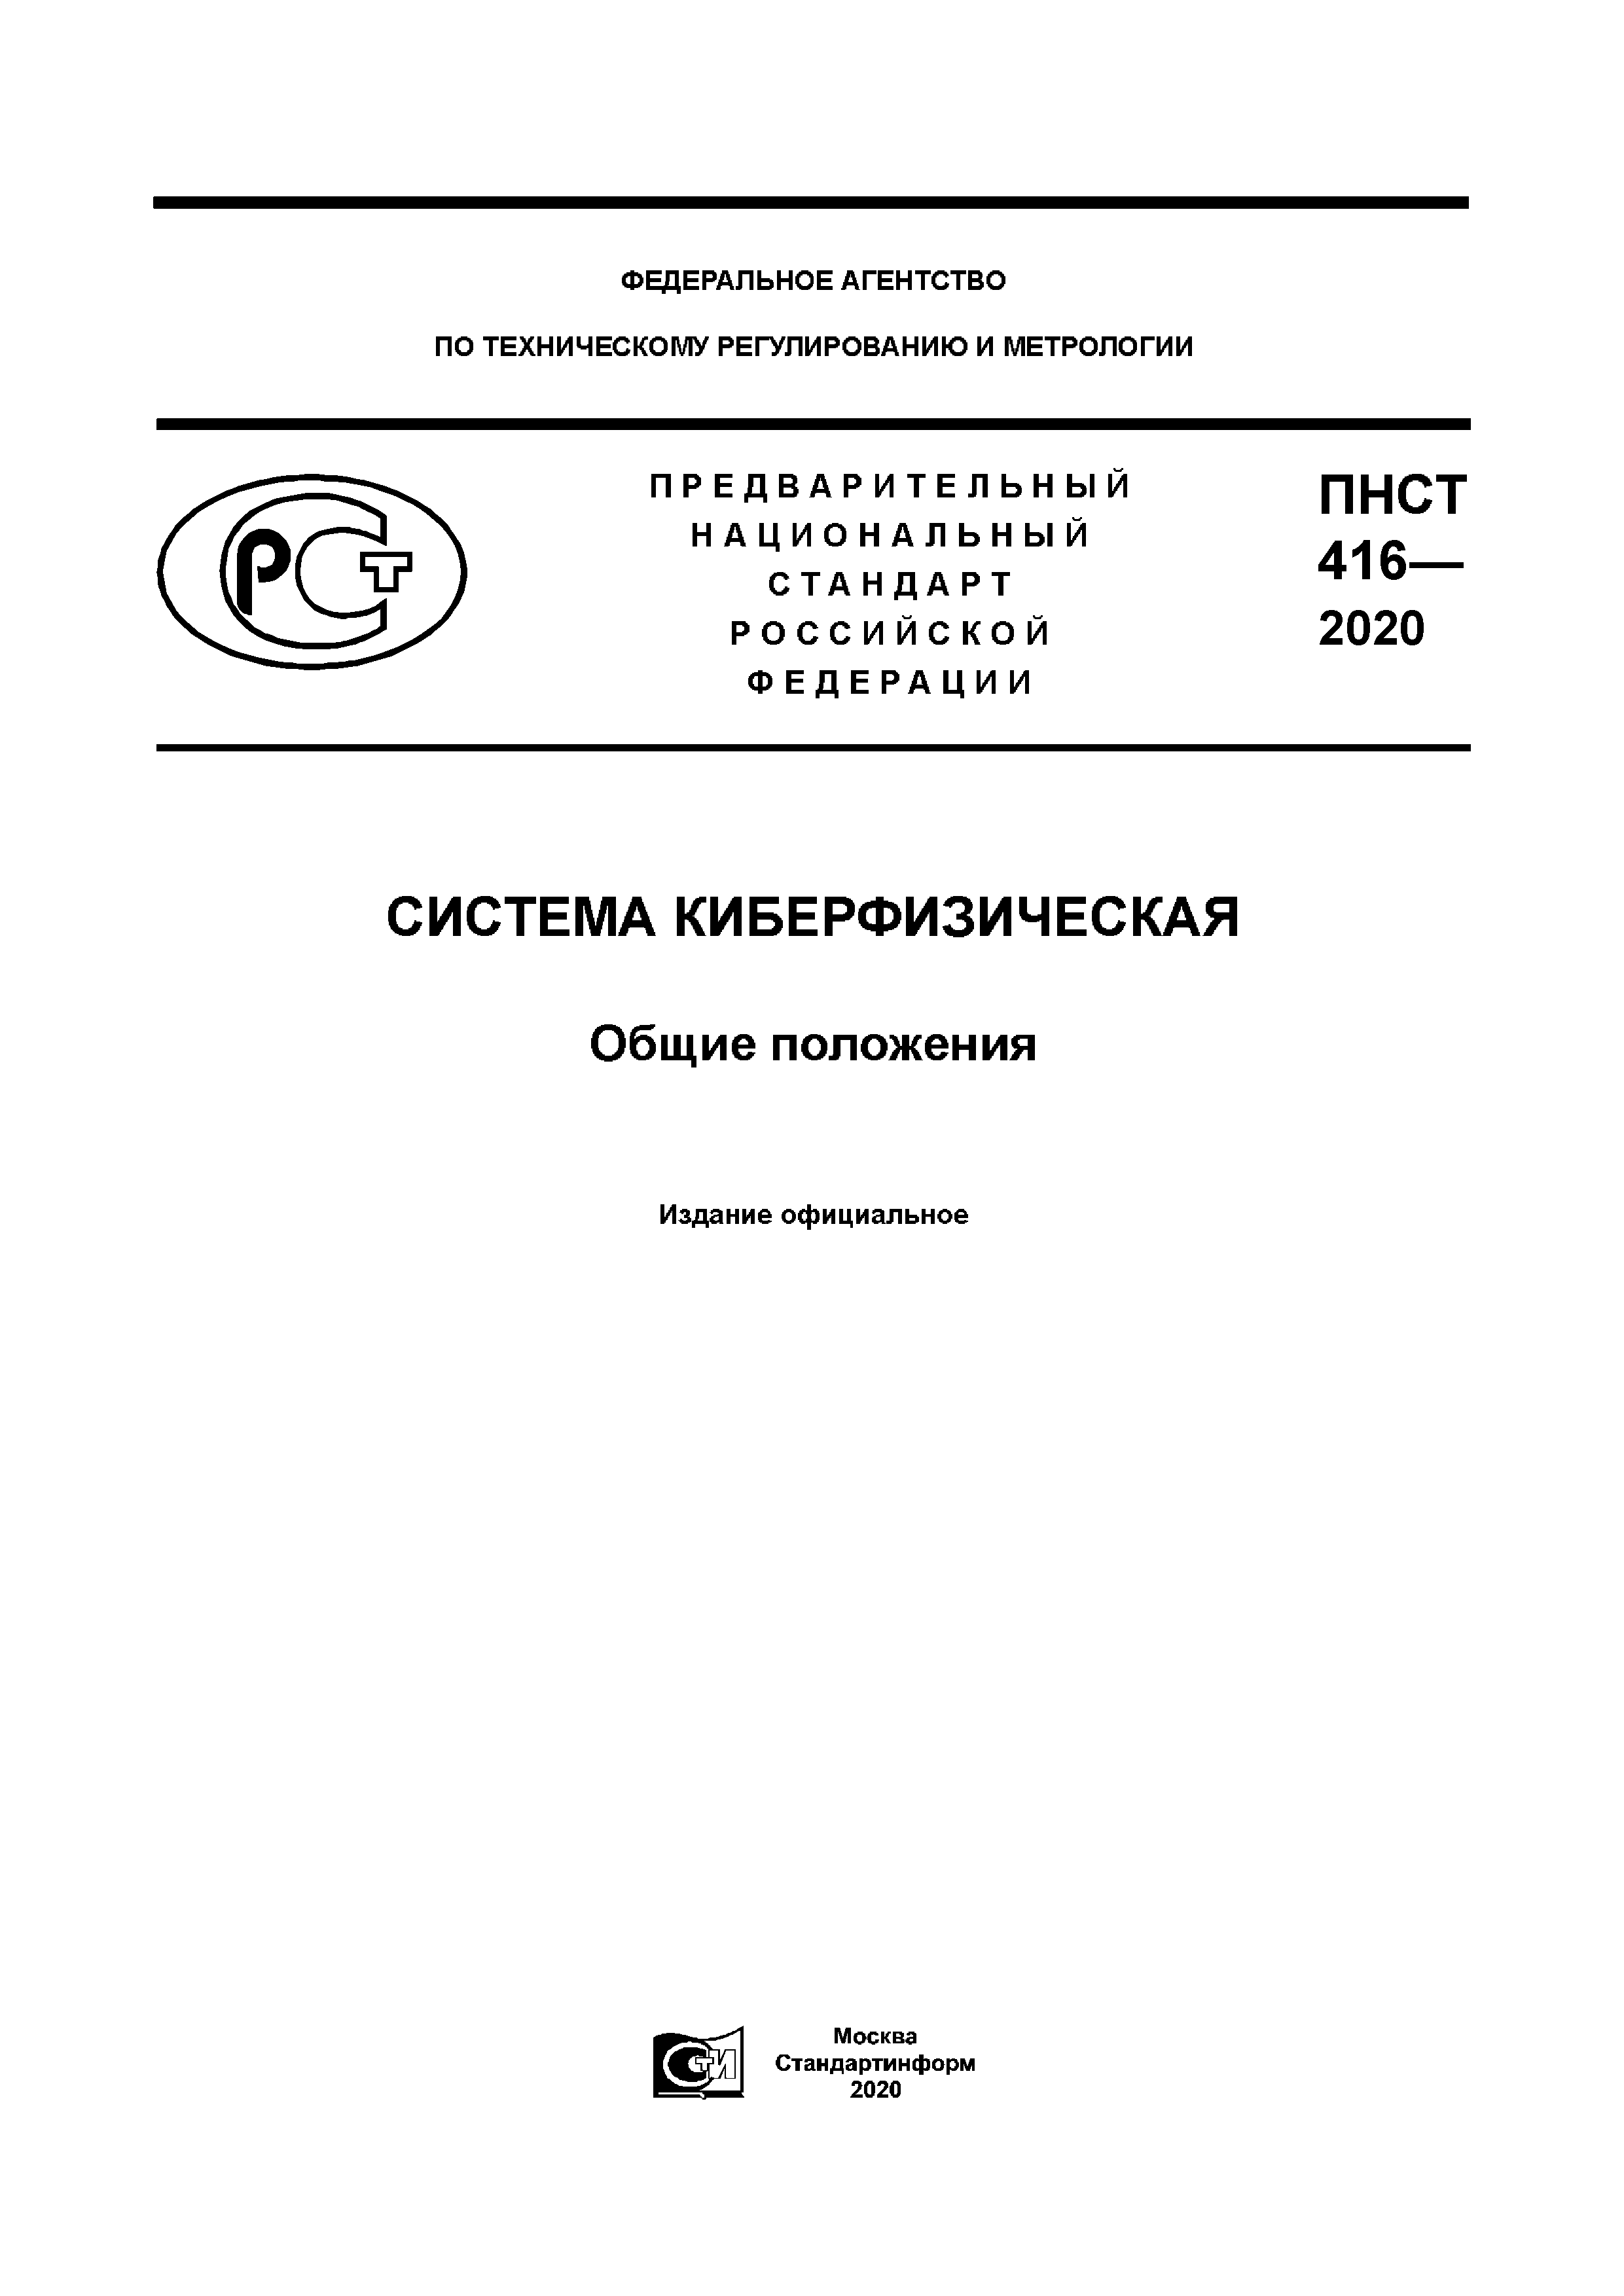 ПНСТ 416-2020